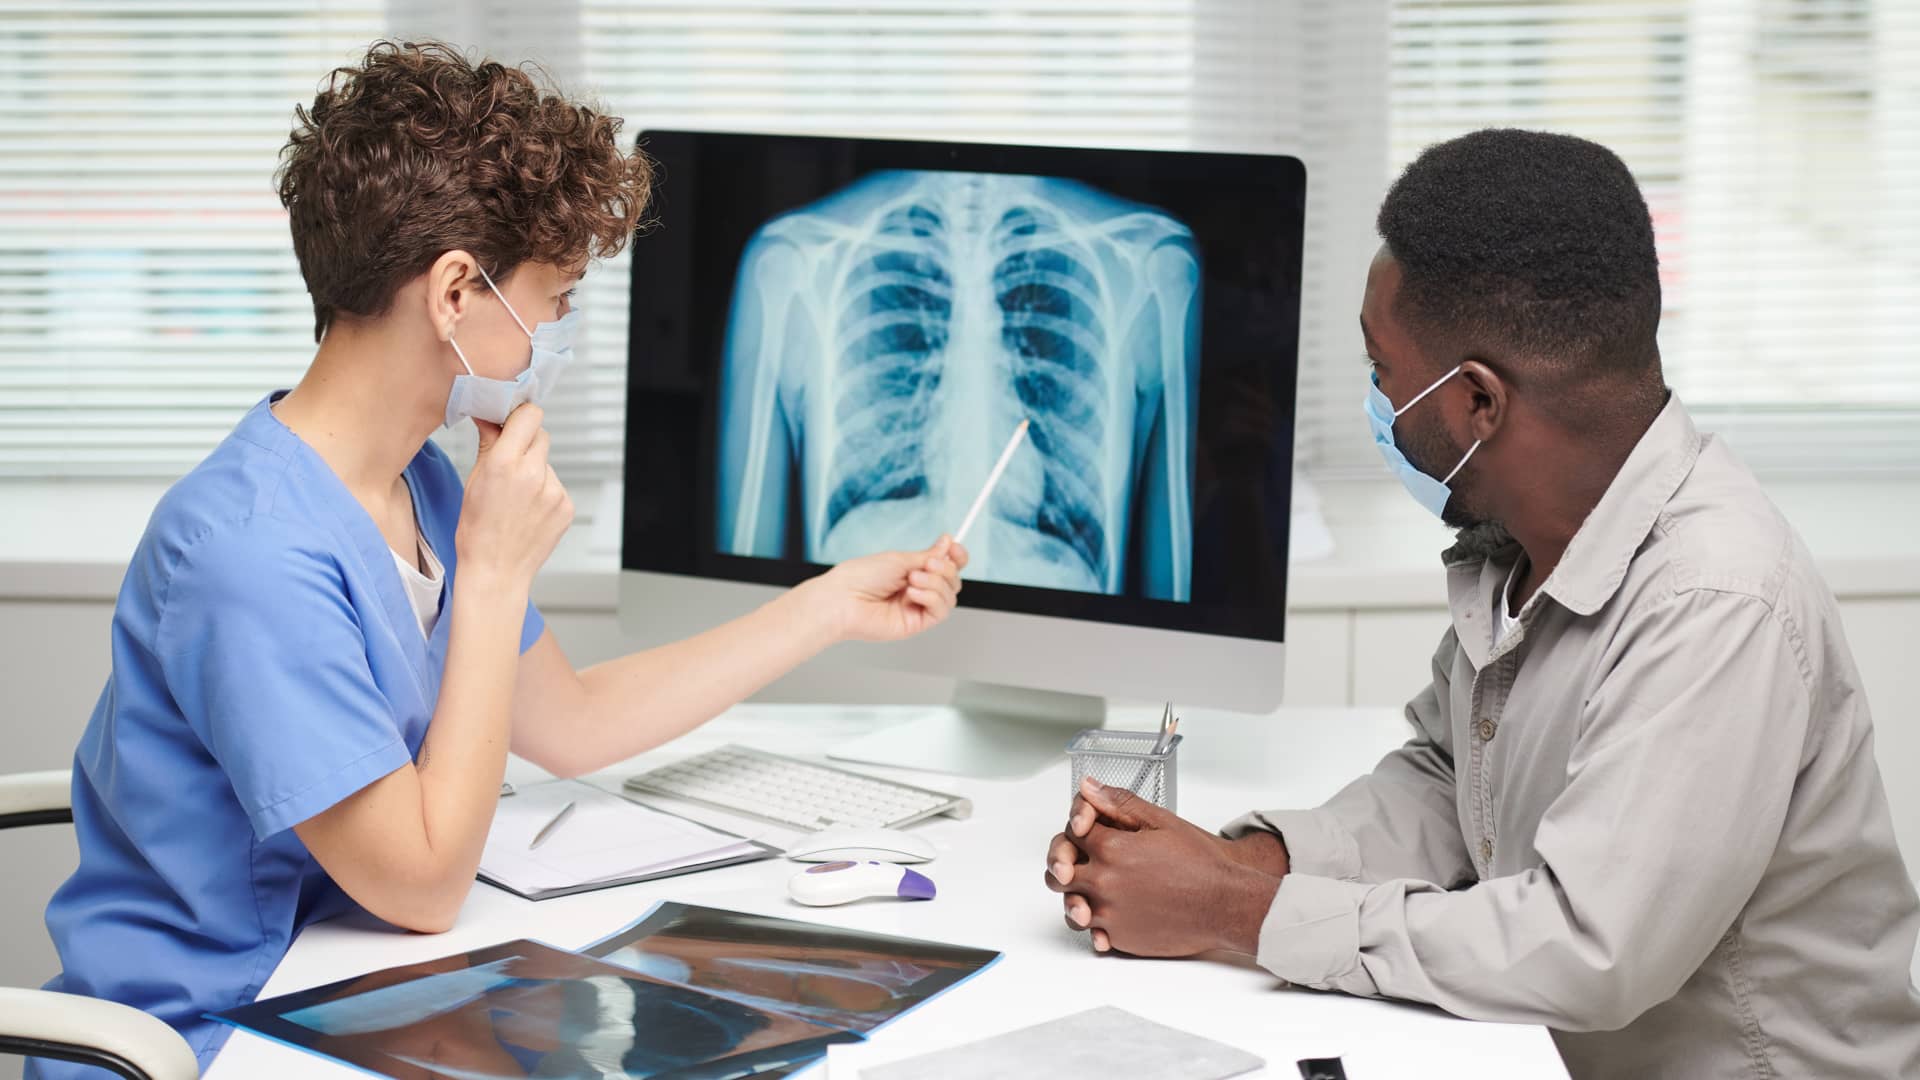 Médica neumóloga explica a su paciente asegurado con Adeslas los resultados de su radiografía pulmonar